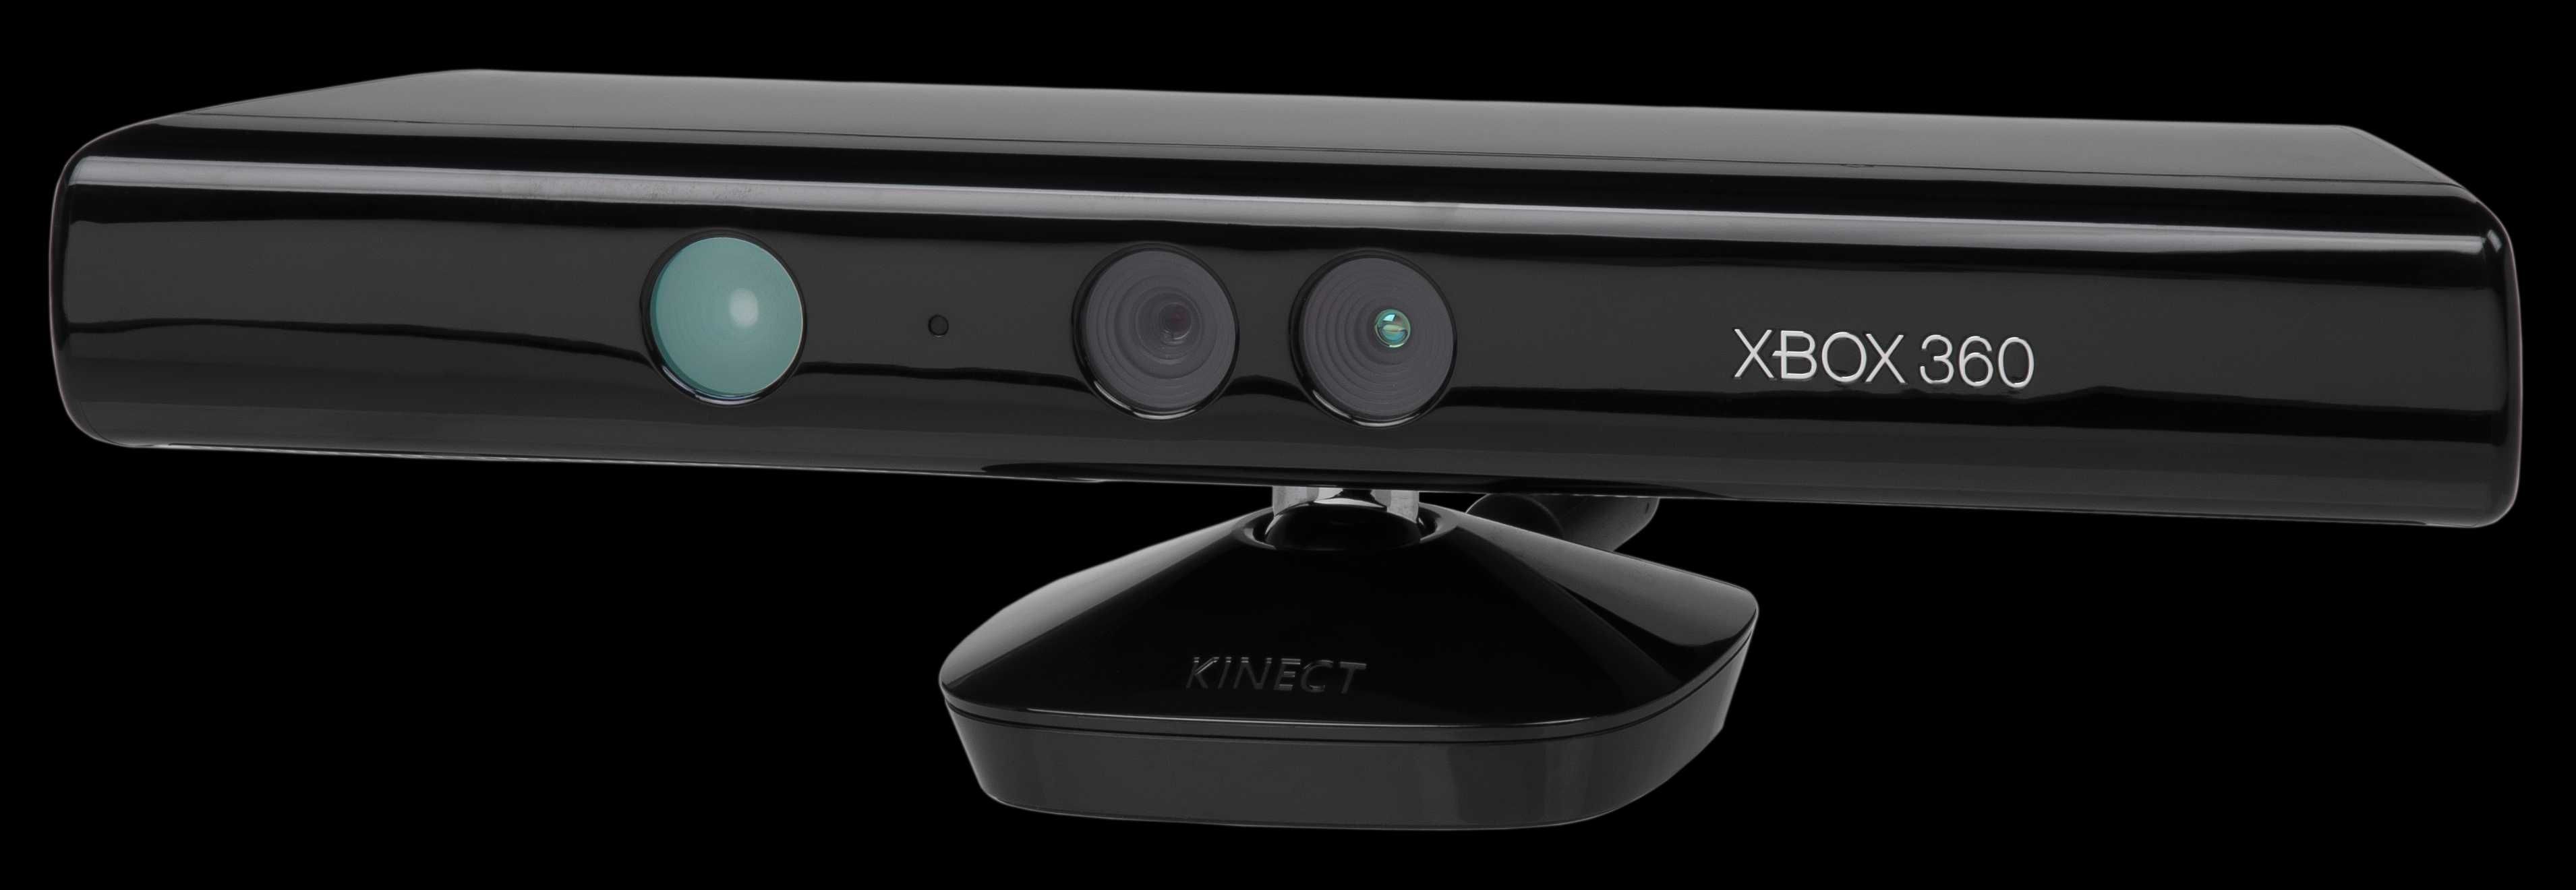 Kinect XBox 360 Camera Xbox360 la 129 lei!